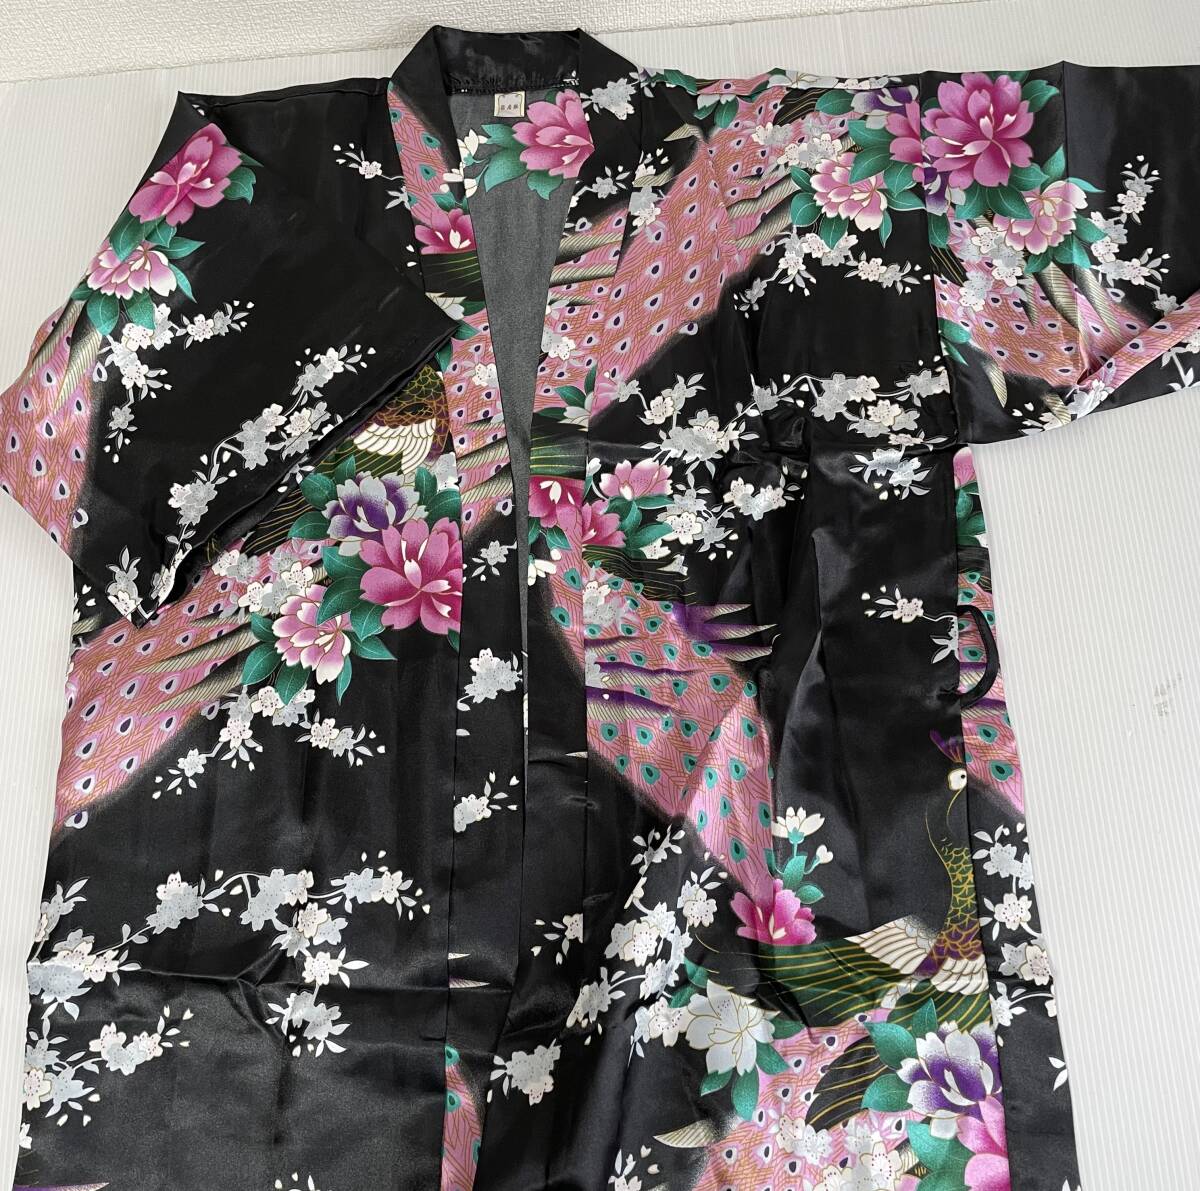  юката кимоно чёрный sexy Ran Jerry костюмы костюм японский стиль салон одежда Night одежда мини длина EJ25